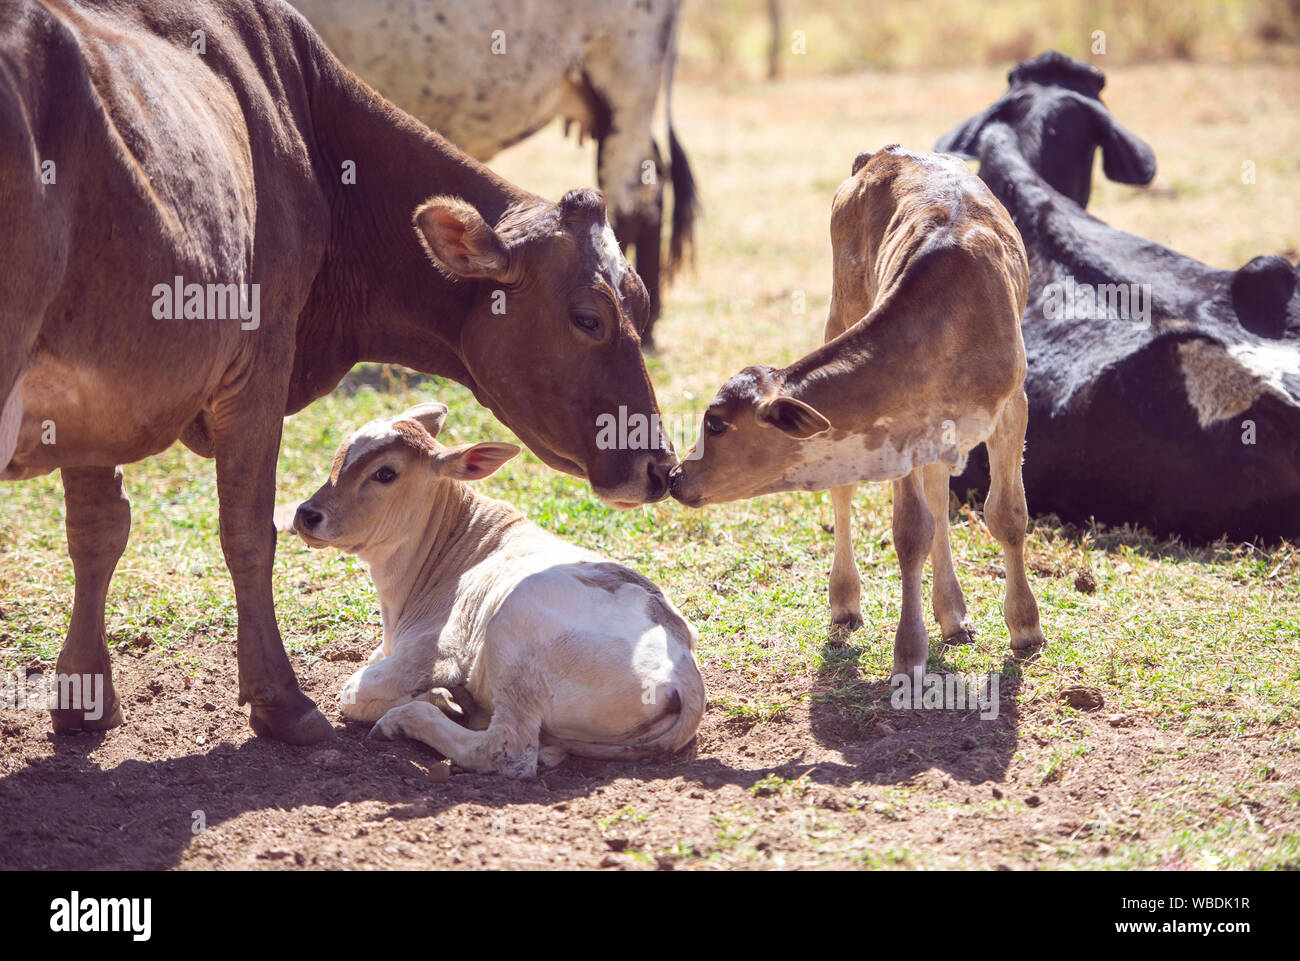 Ländliche Bild. Mutter Kuh die Pflege von Neugeborenen Kalb. Konzept Bild von Leben auf dem Bauernhof. Stockfoto